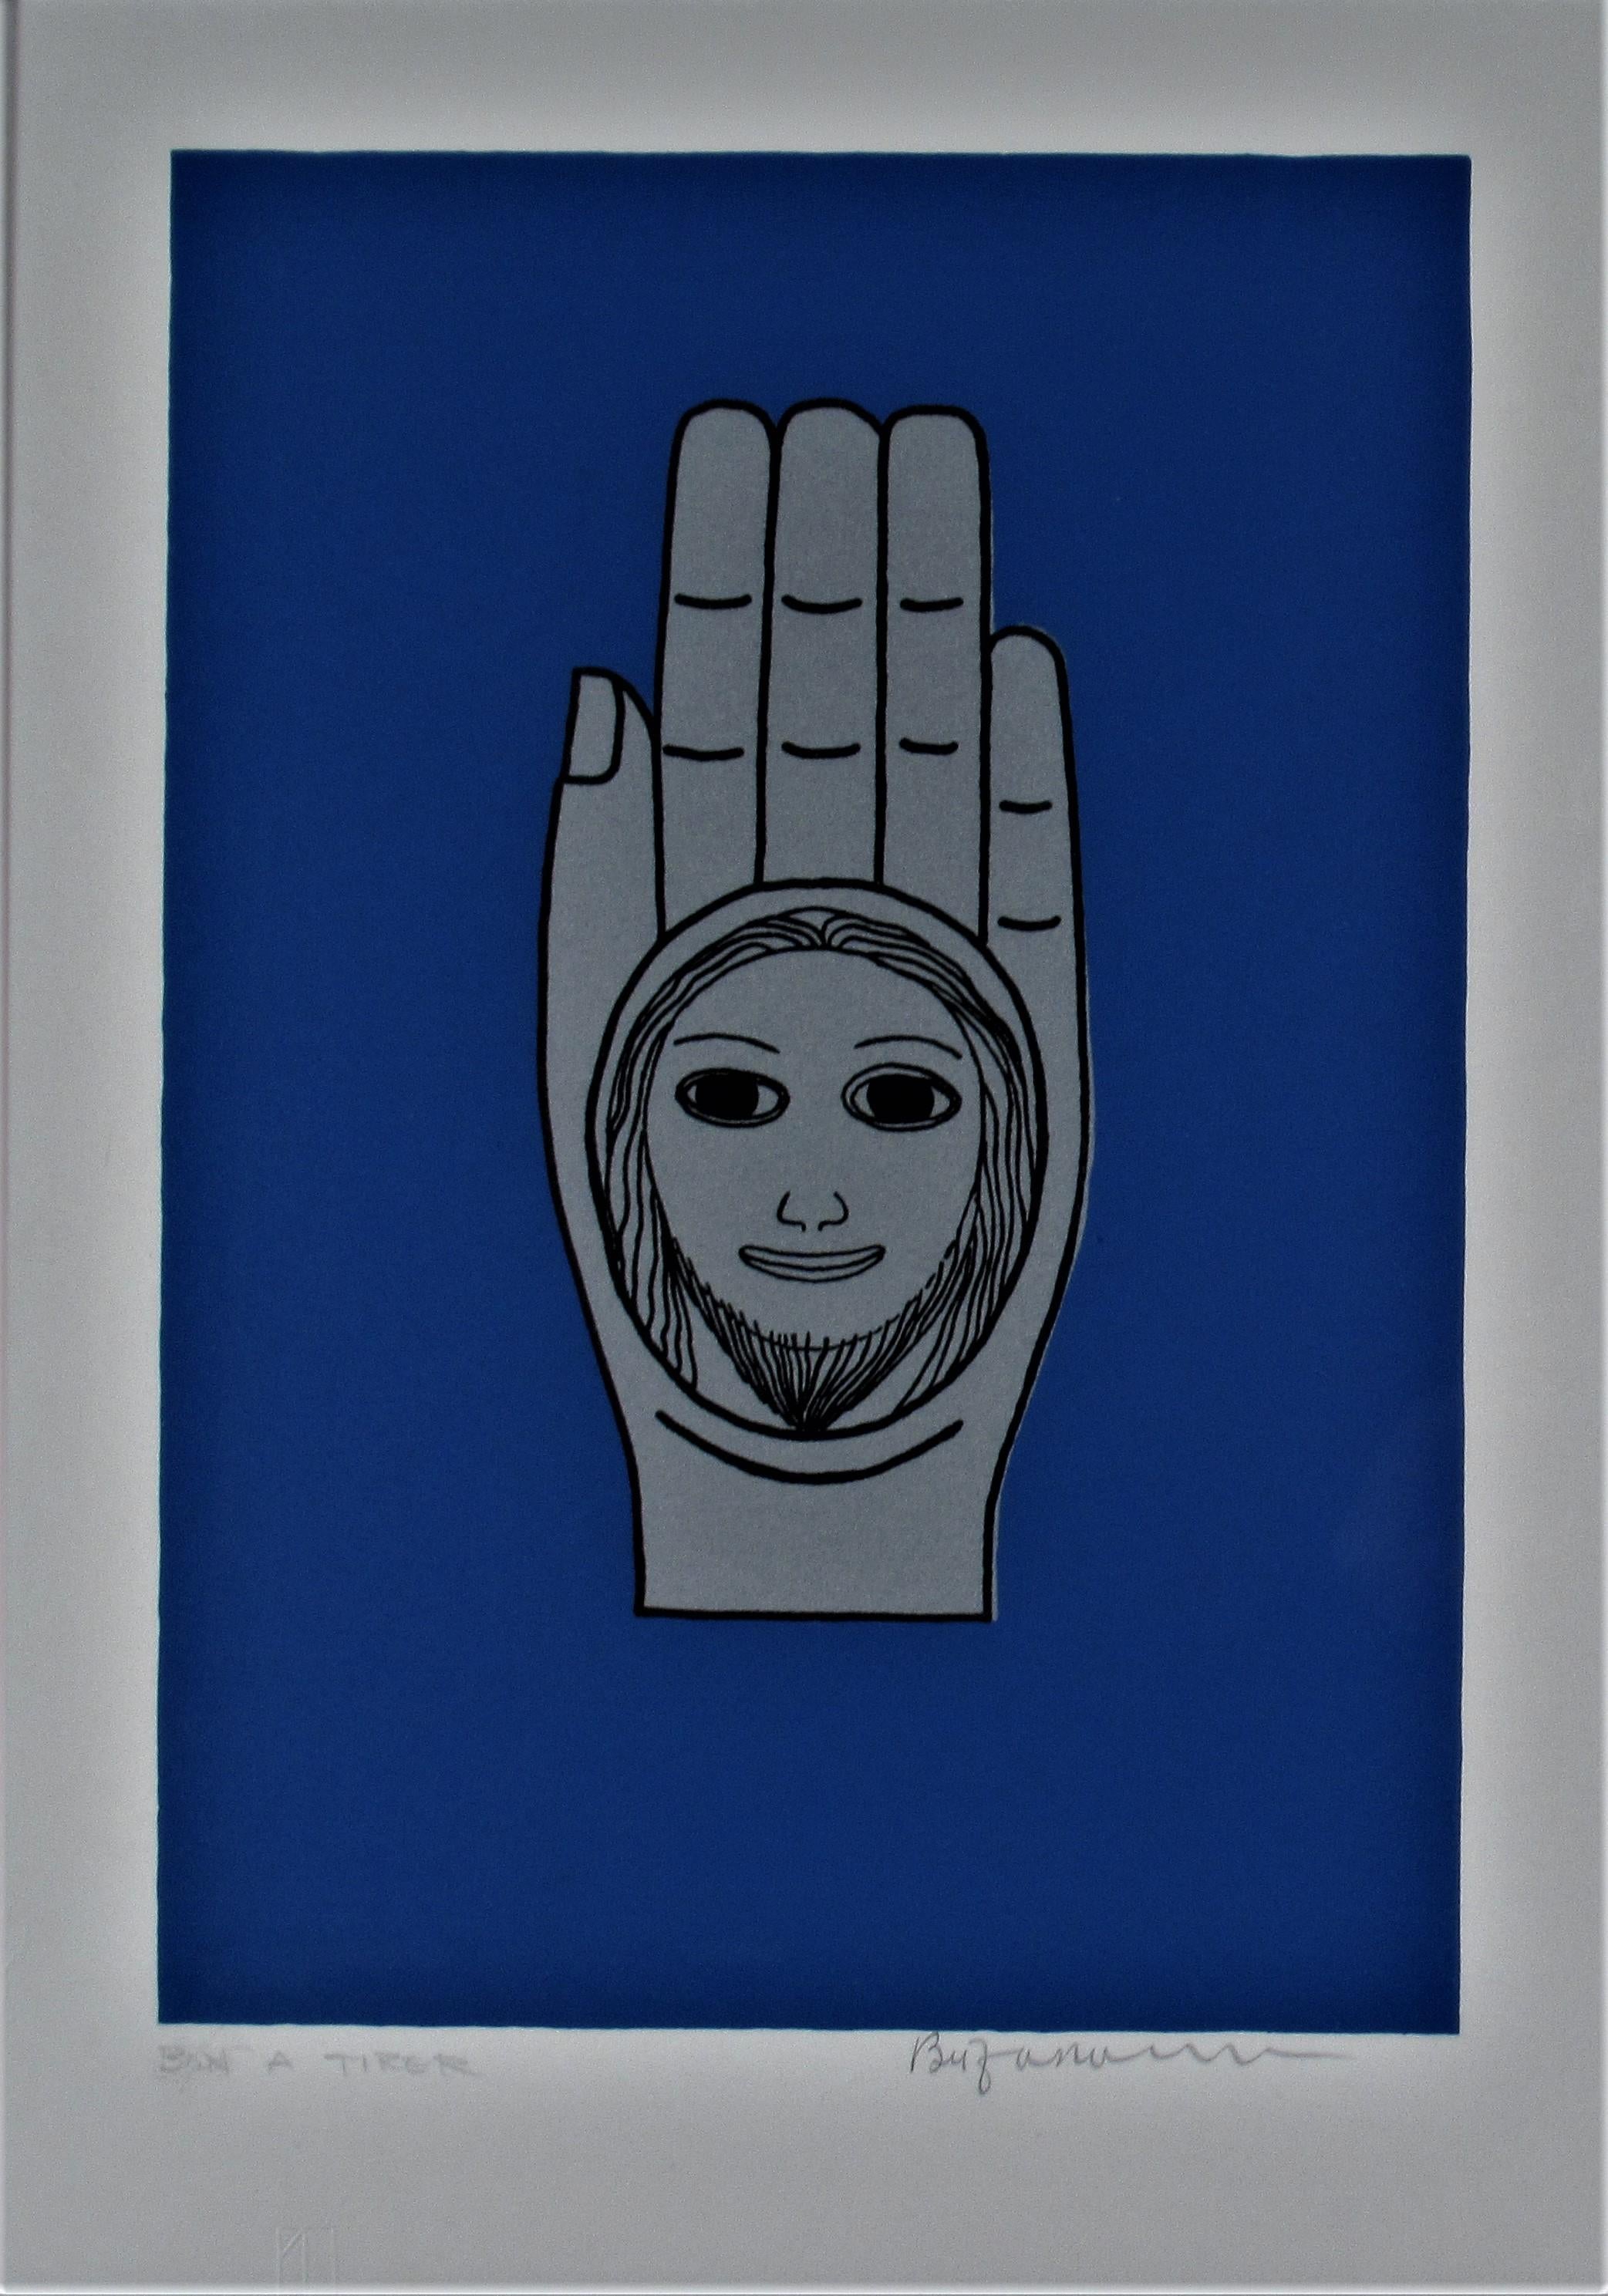 Hand of Peace - Print by Beniamino Bufano